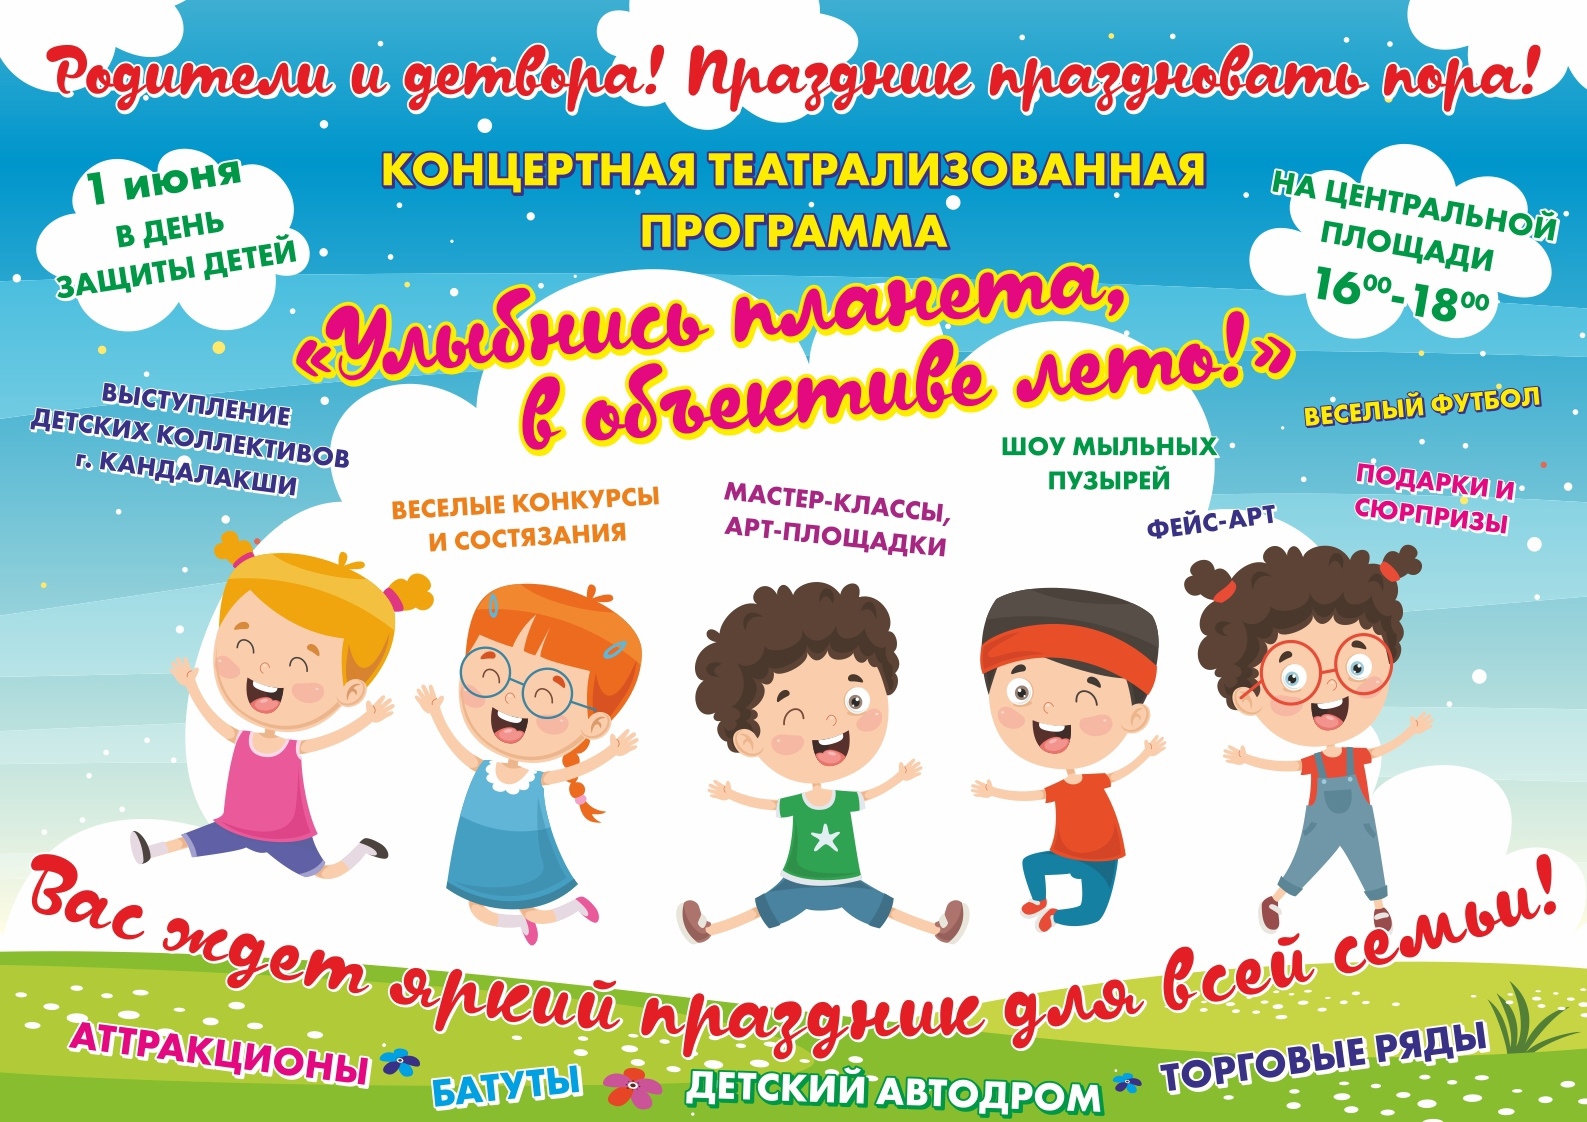 1 июня новосибирск. Концертная программа ко Дню защиты детей. 1 Июня праздник для детей. Приглашаем на детский праздник день защиты детей. План на 1 июня день защиты детей.